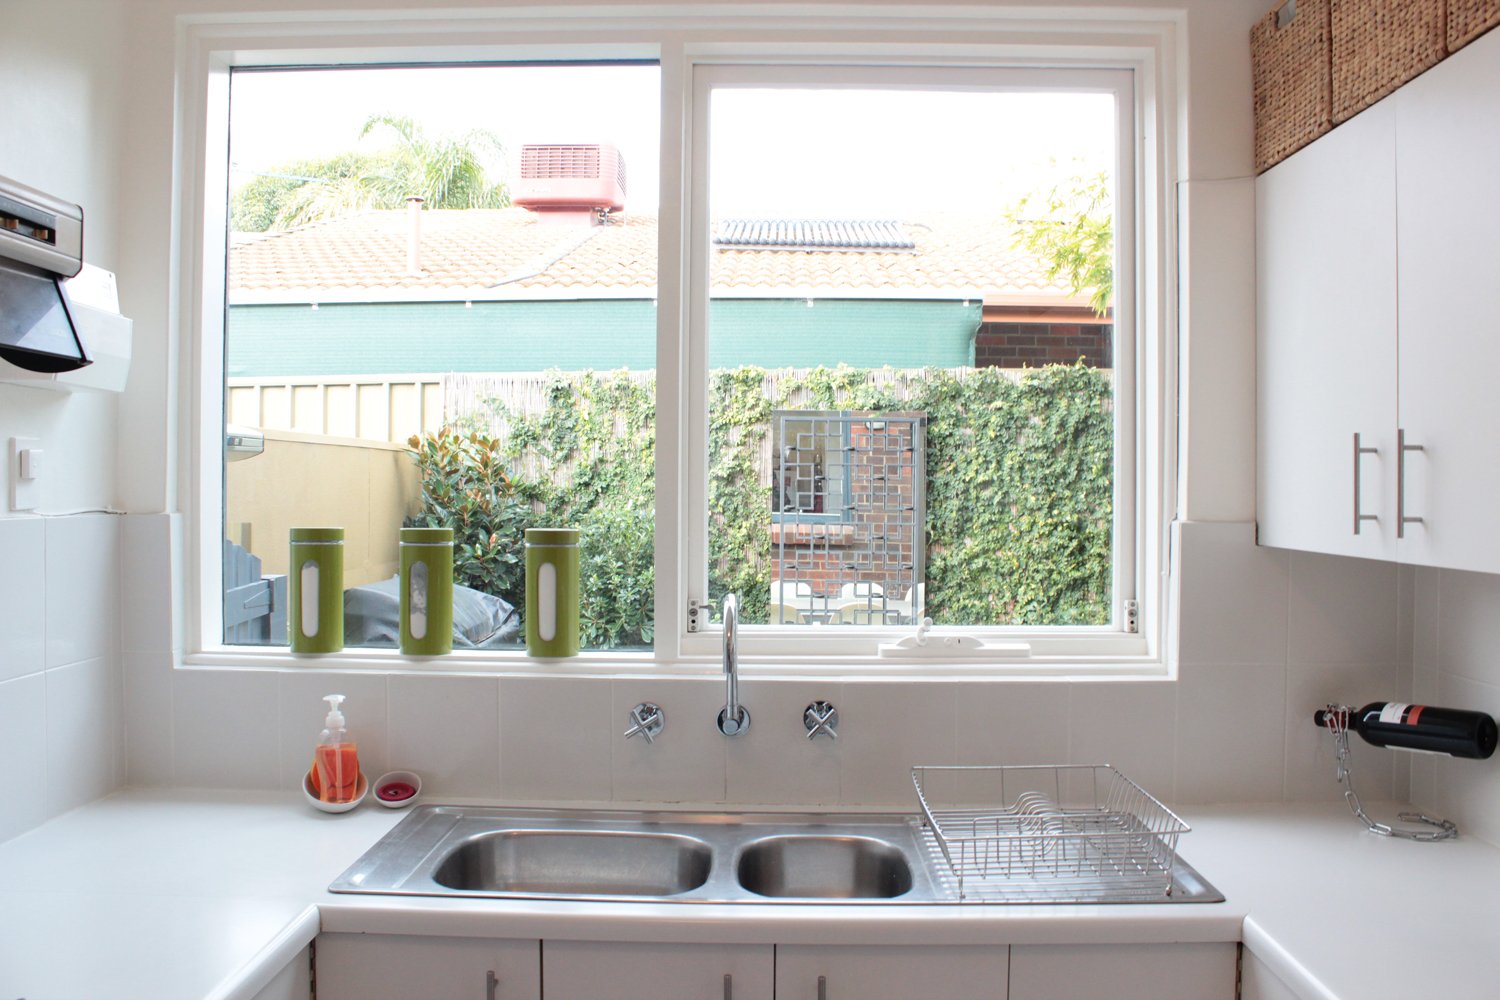 Мойка на кухне у окна: за и против, фото